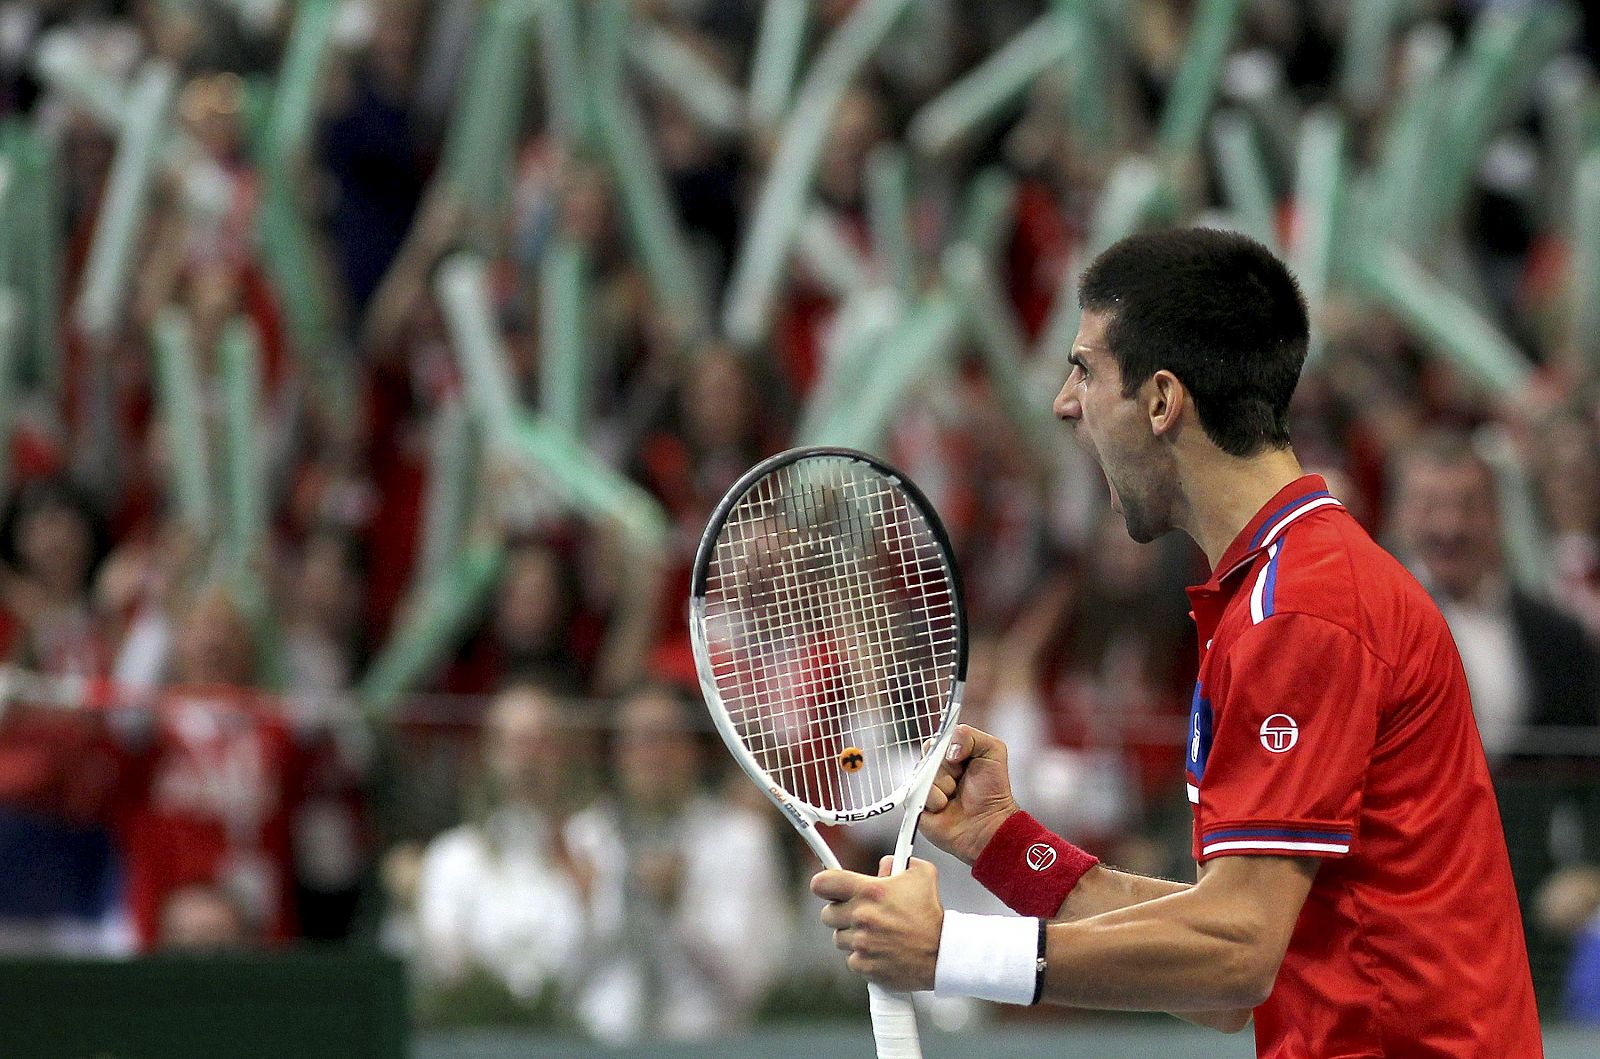 El tenista serbio Novak Djokovic celebra tras ganar un punto al francés Gilles Simon durante el segundo partido de singles de la final de la Copa Davis.